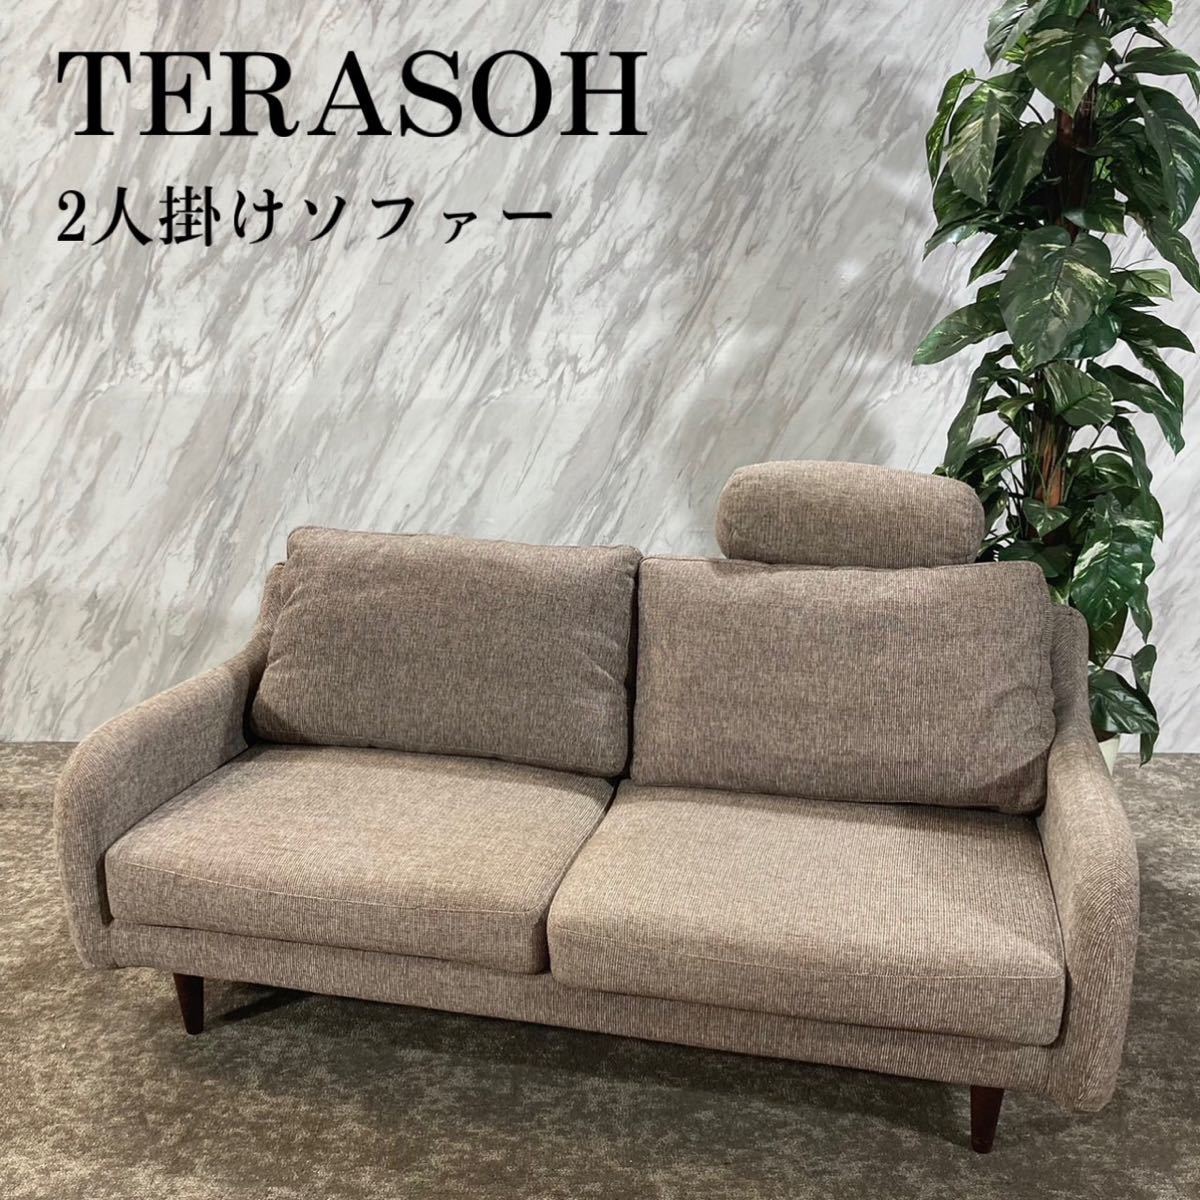 TERASOH テラソー 2人掛け ソファ ファブリック 家具 J600-